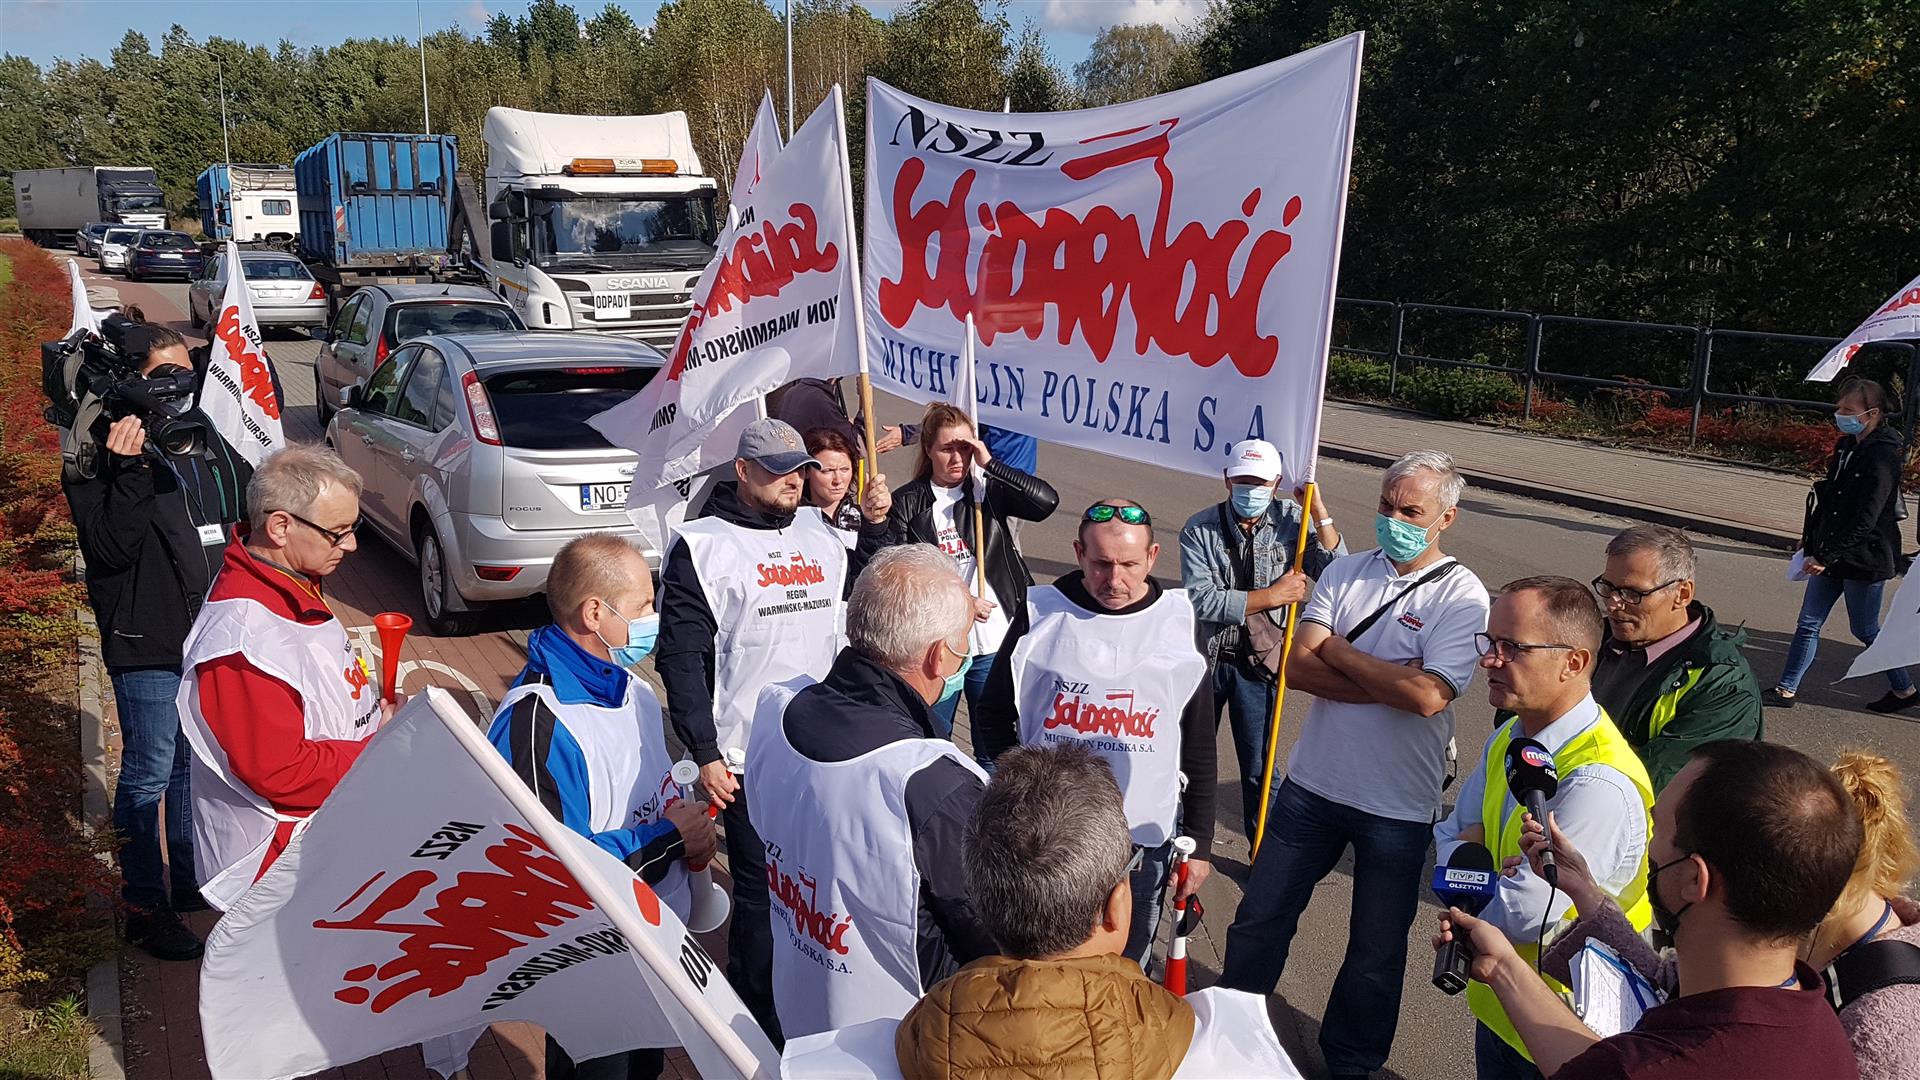 Strajk w olsztyńskim ZGOK-u. Zarzucają prezesowi marnowanie pieniędzy